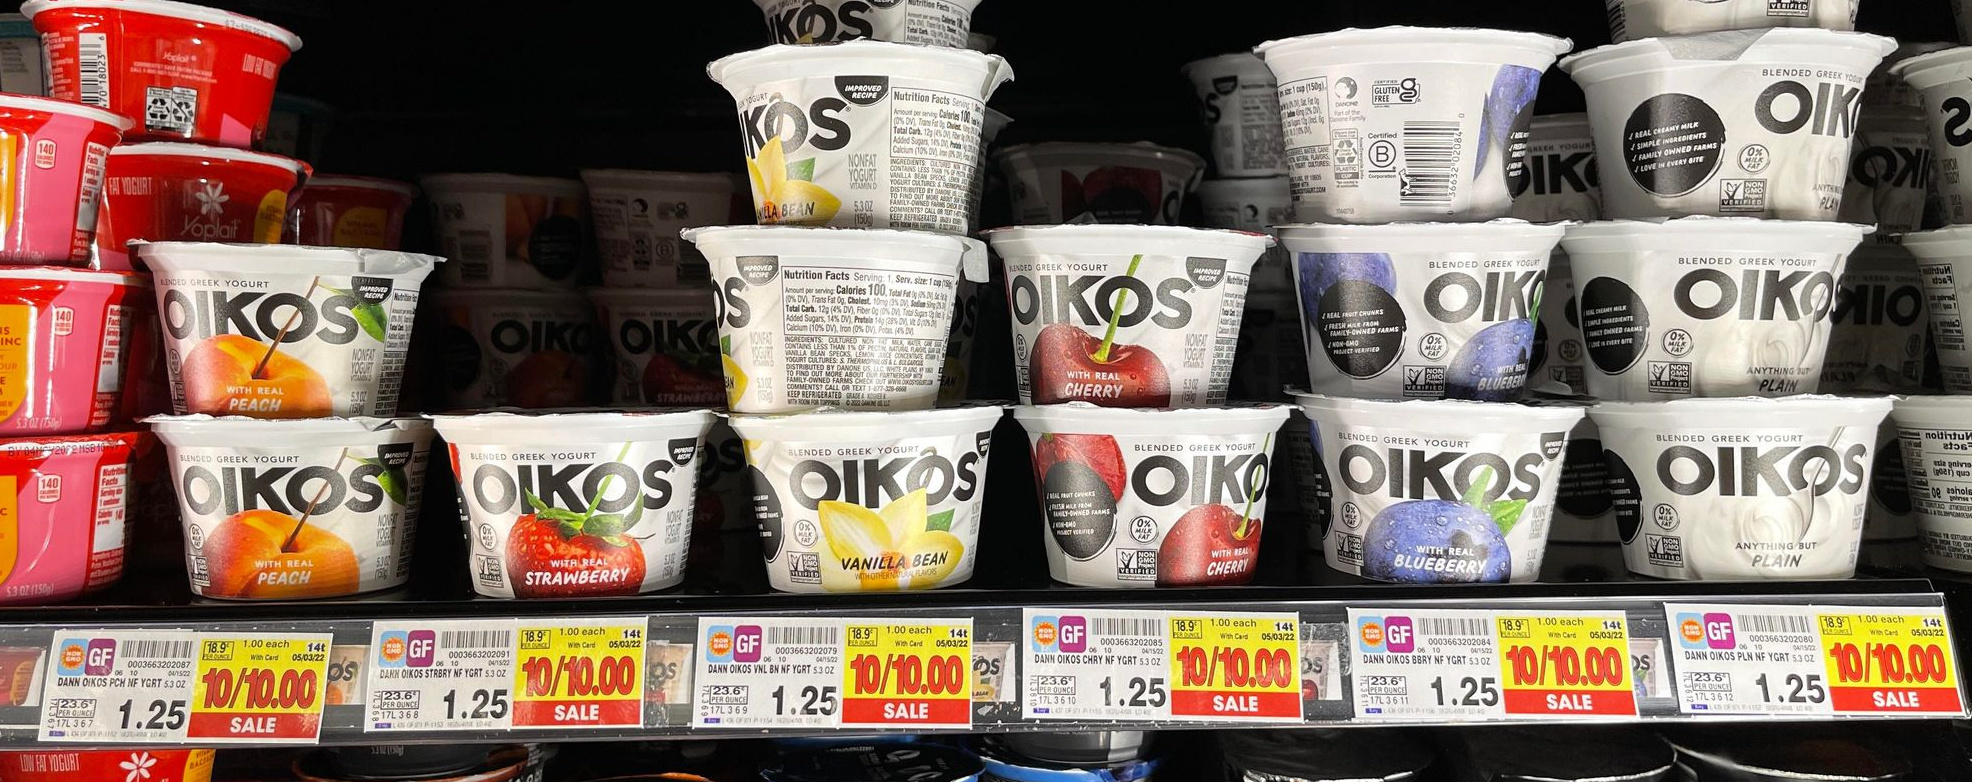 Dannon Oikos Blended Greek Yogurt Kroger shelf image